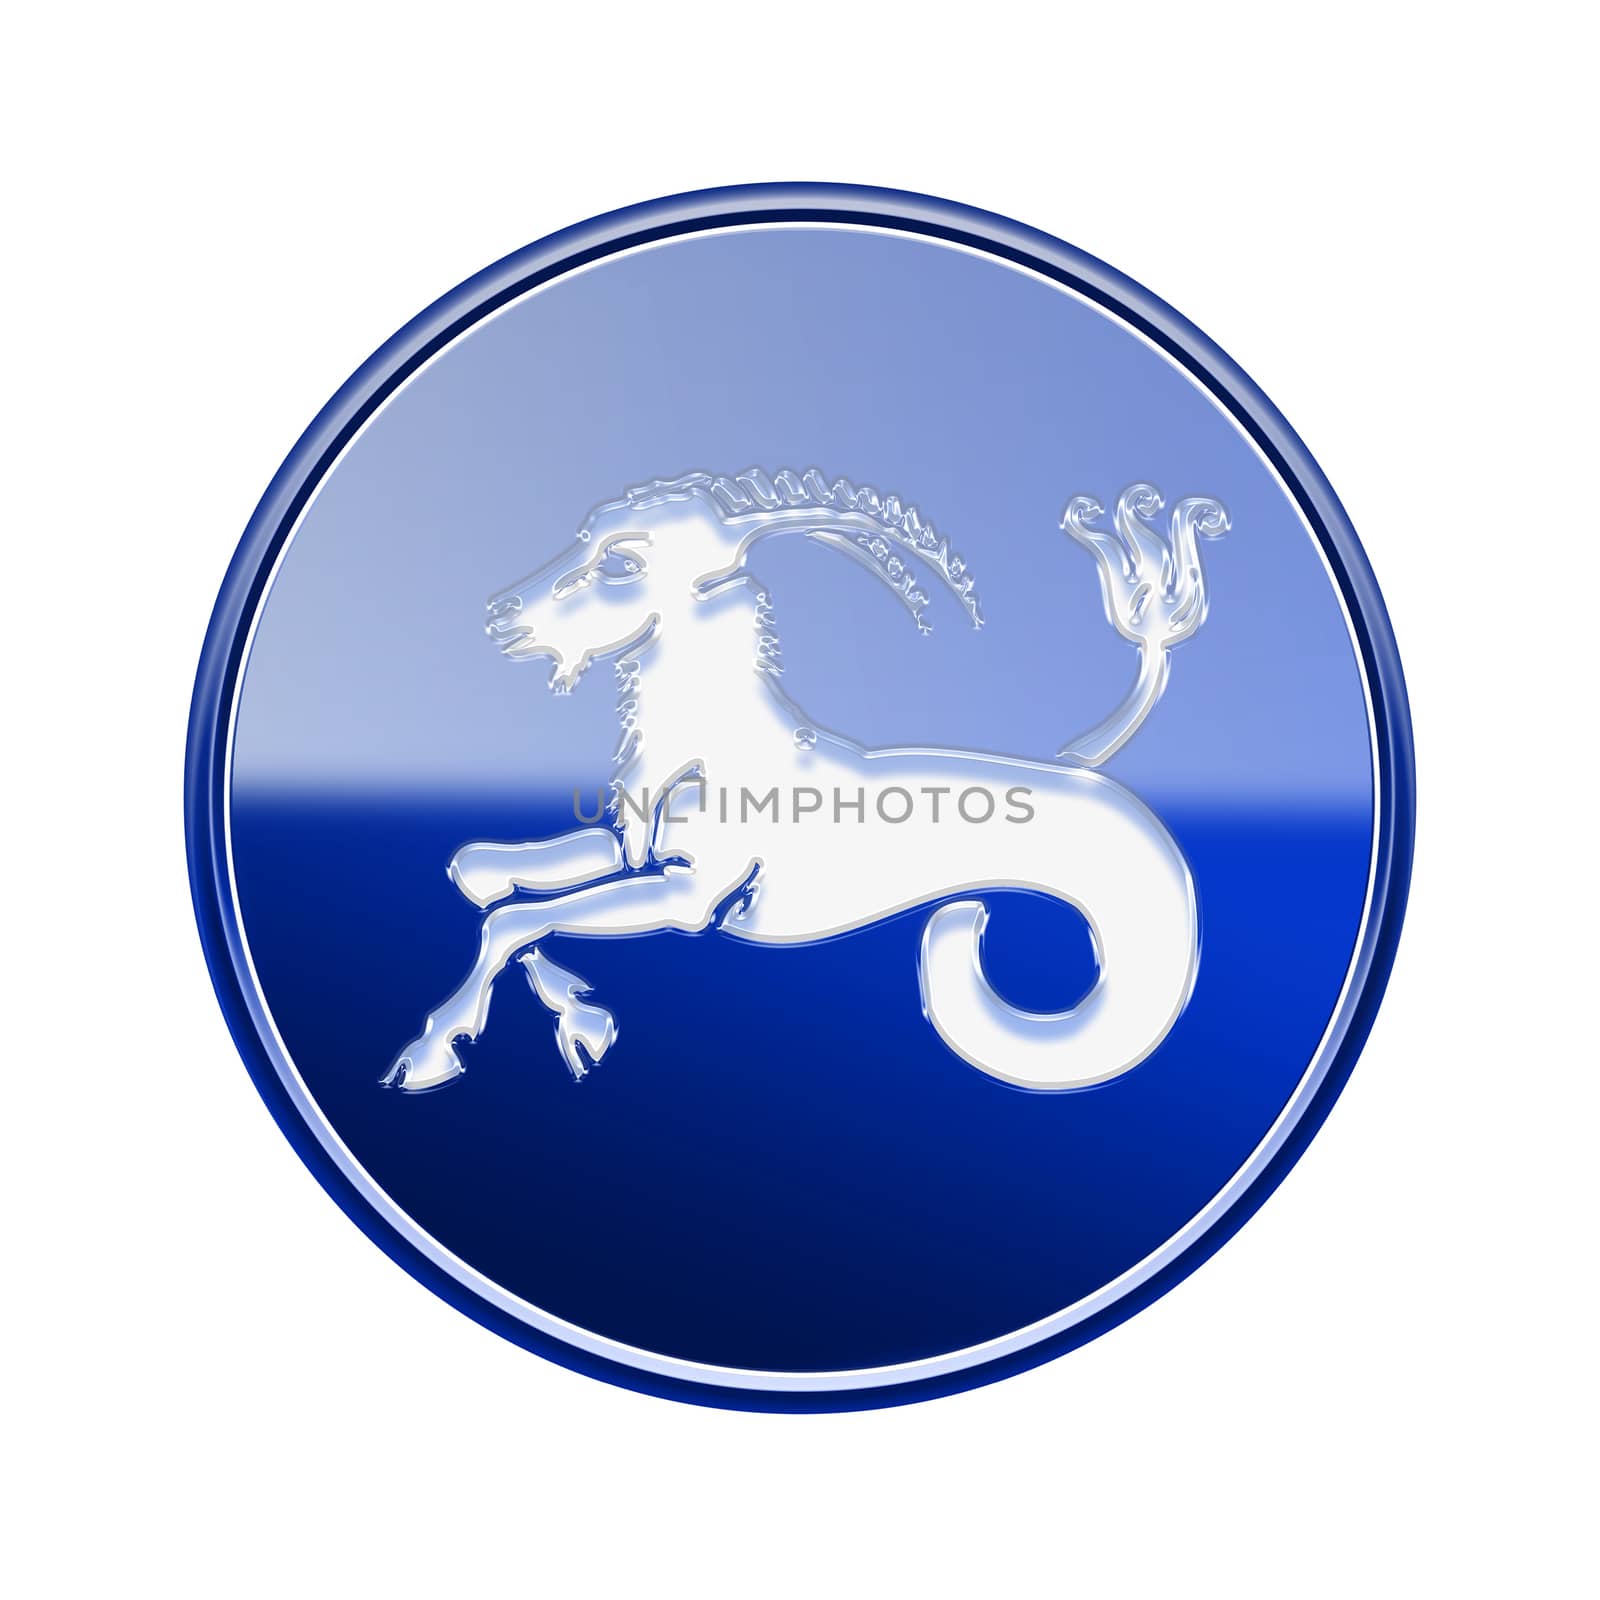 Capricorn zodiac icon blue, isolated on white background